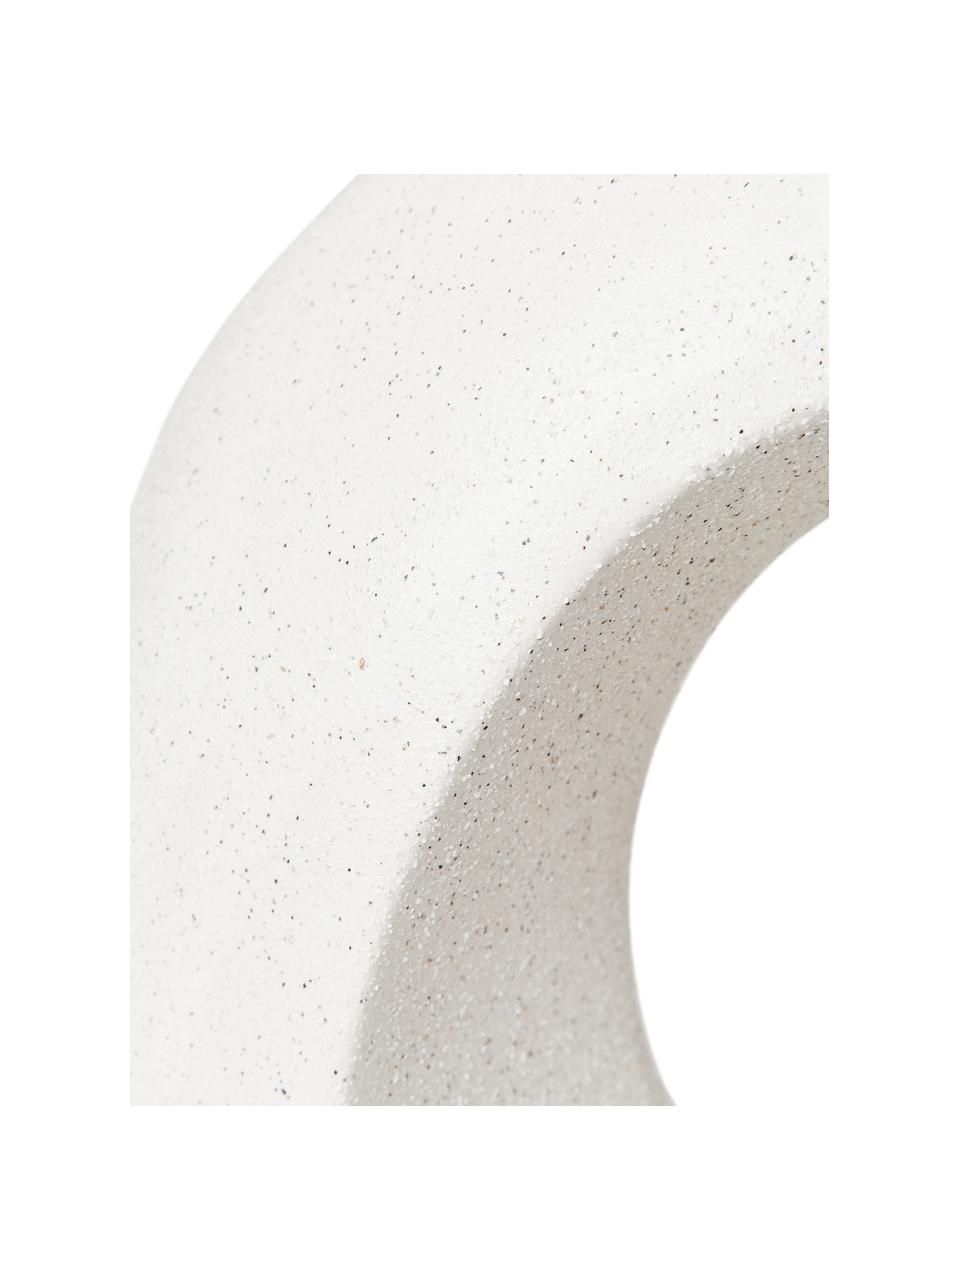 Oggetto decorativo effetto sabbia Olena, Gres, Bianco, Larg. 32 x Alt. 31 cm